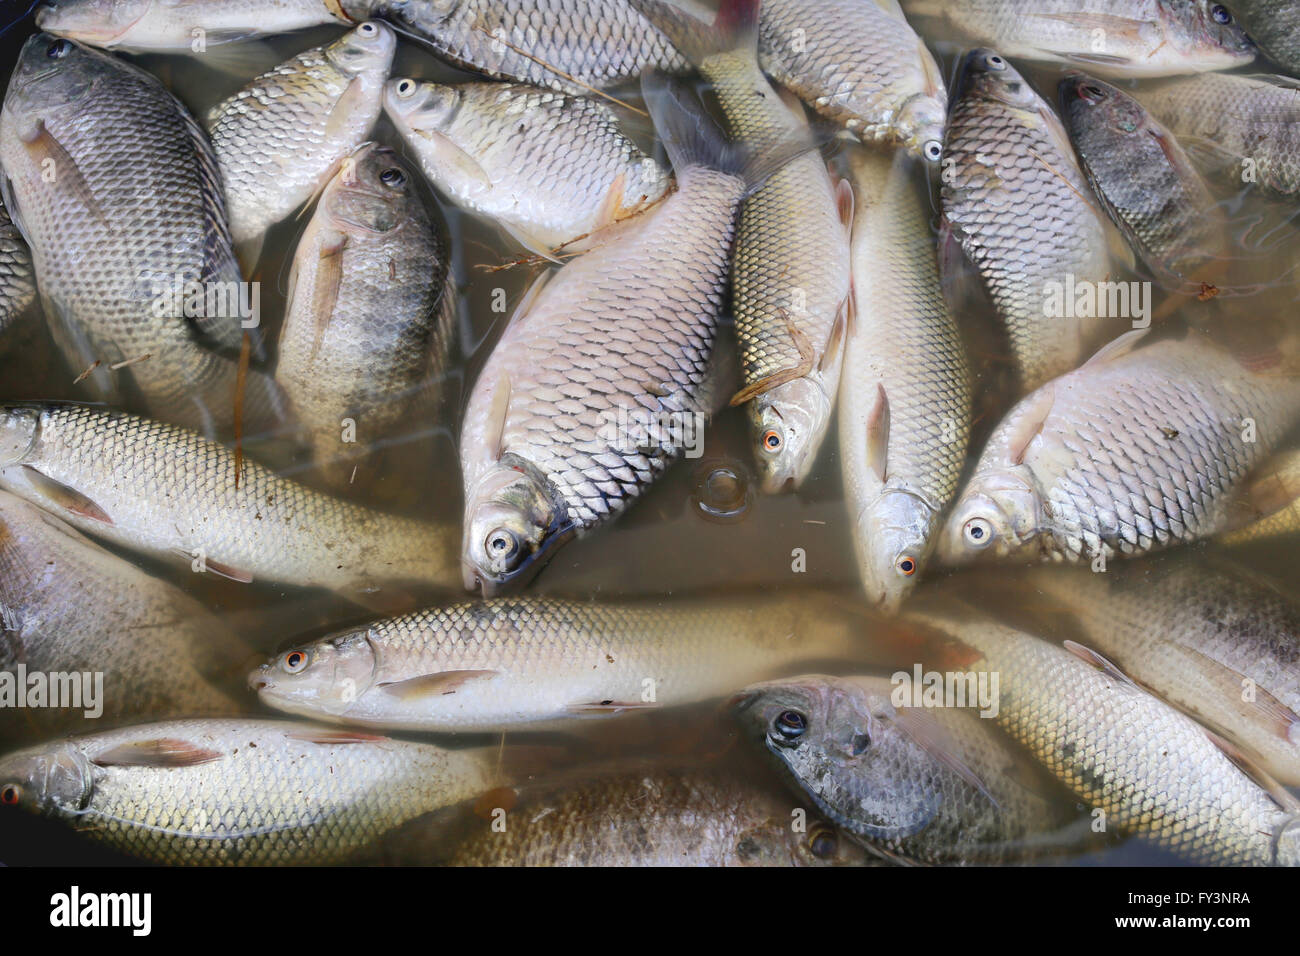 Los peces murieron debido a las aguas residuales de la fábrica industrial. Foto de stock